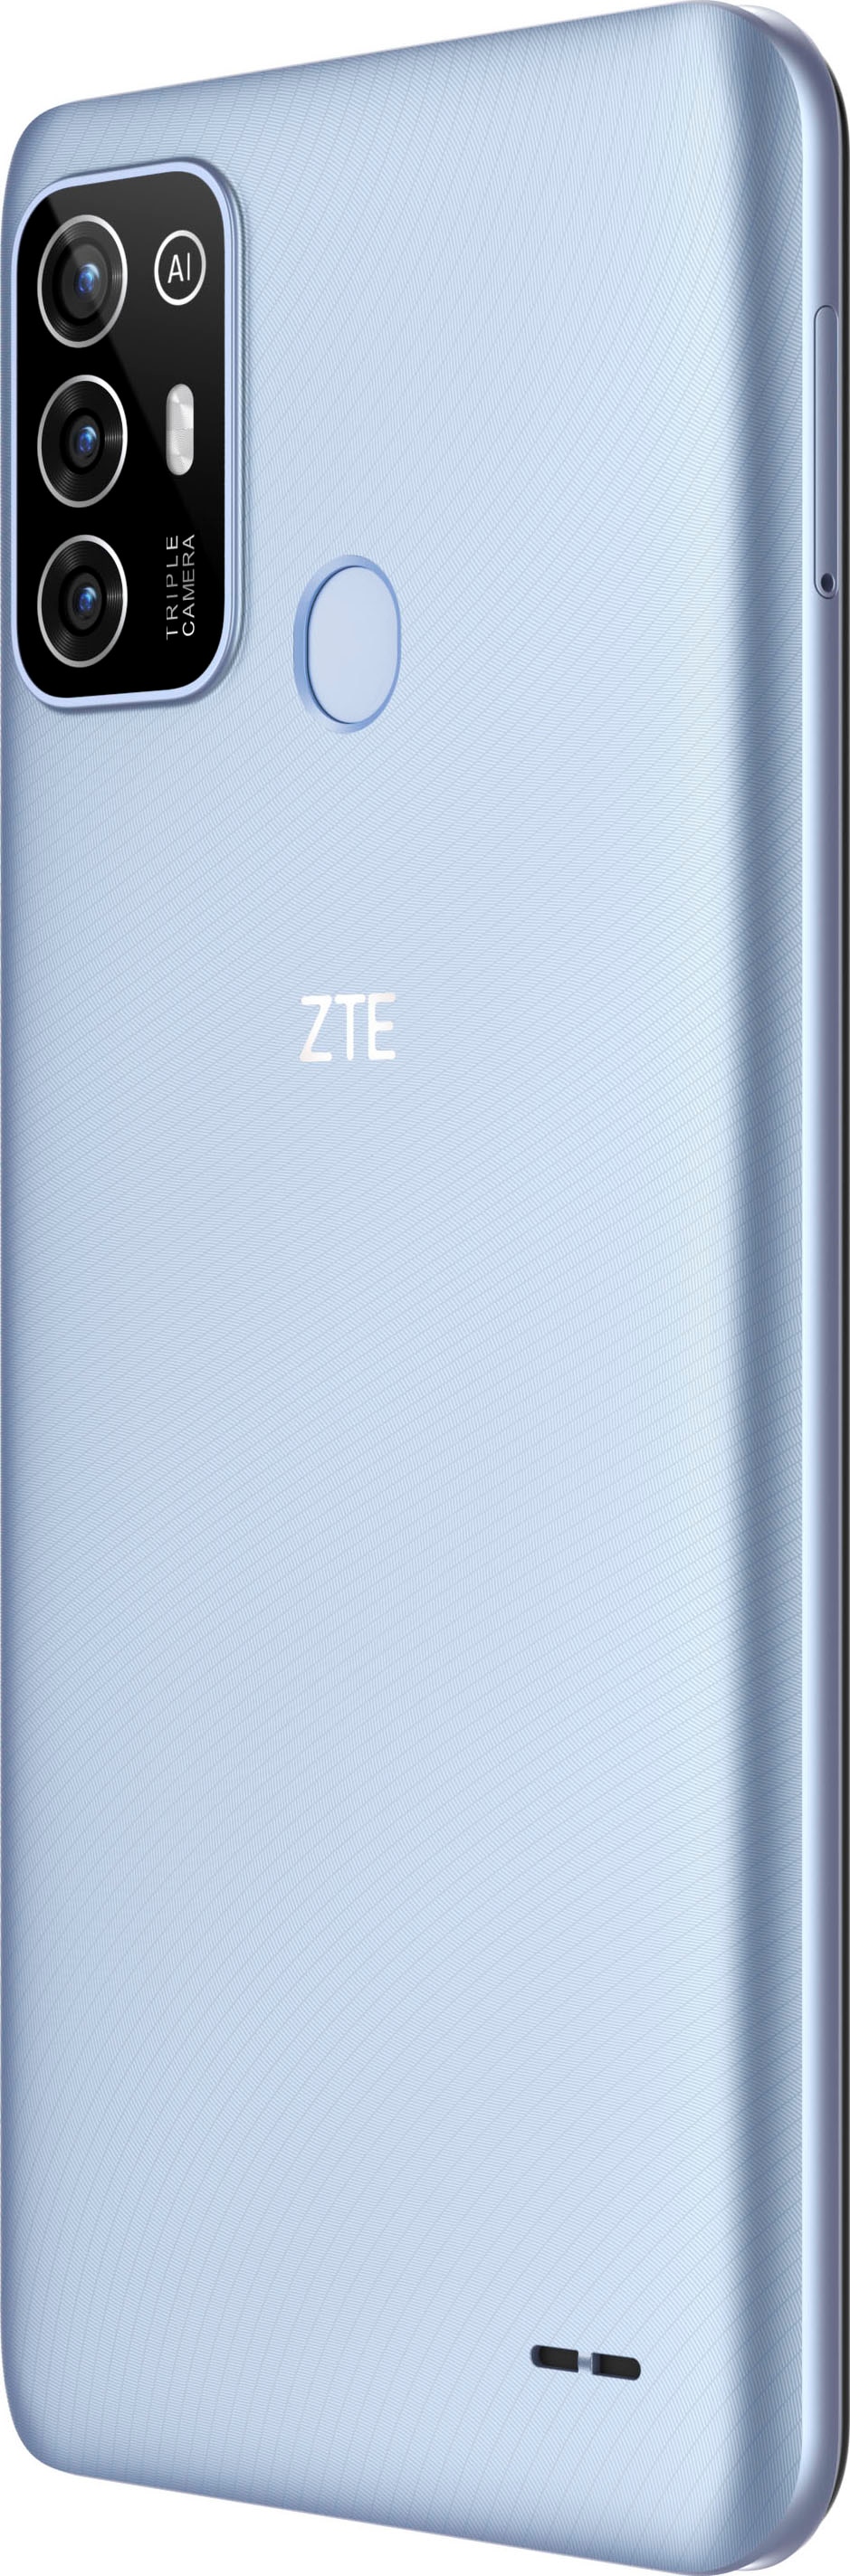 ZTE Smartphone »Blade A52«, Crystal Blue, 16,5 cm/6,52 Zoll, 64 GB  Speicherplatz, 13 MP Kamera jetzt im OTTO Online Shop